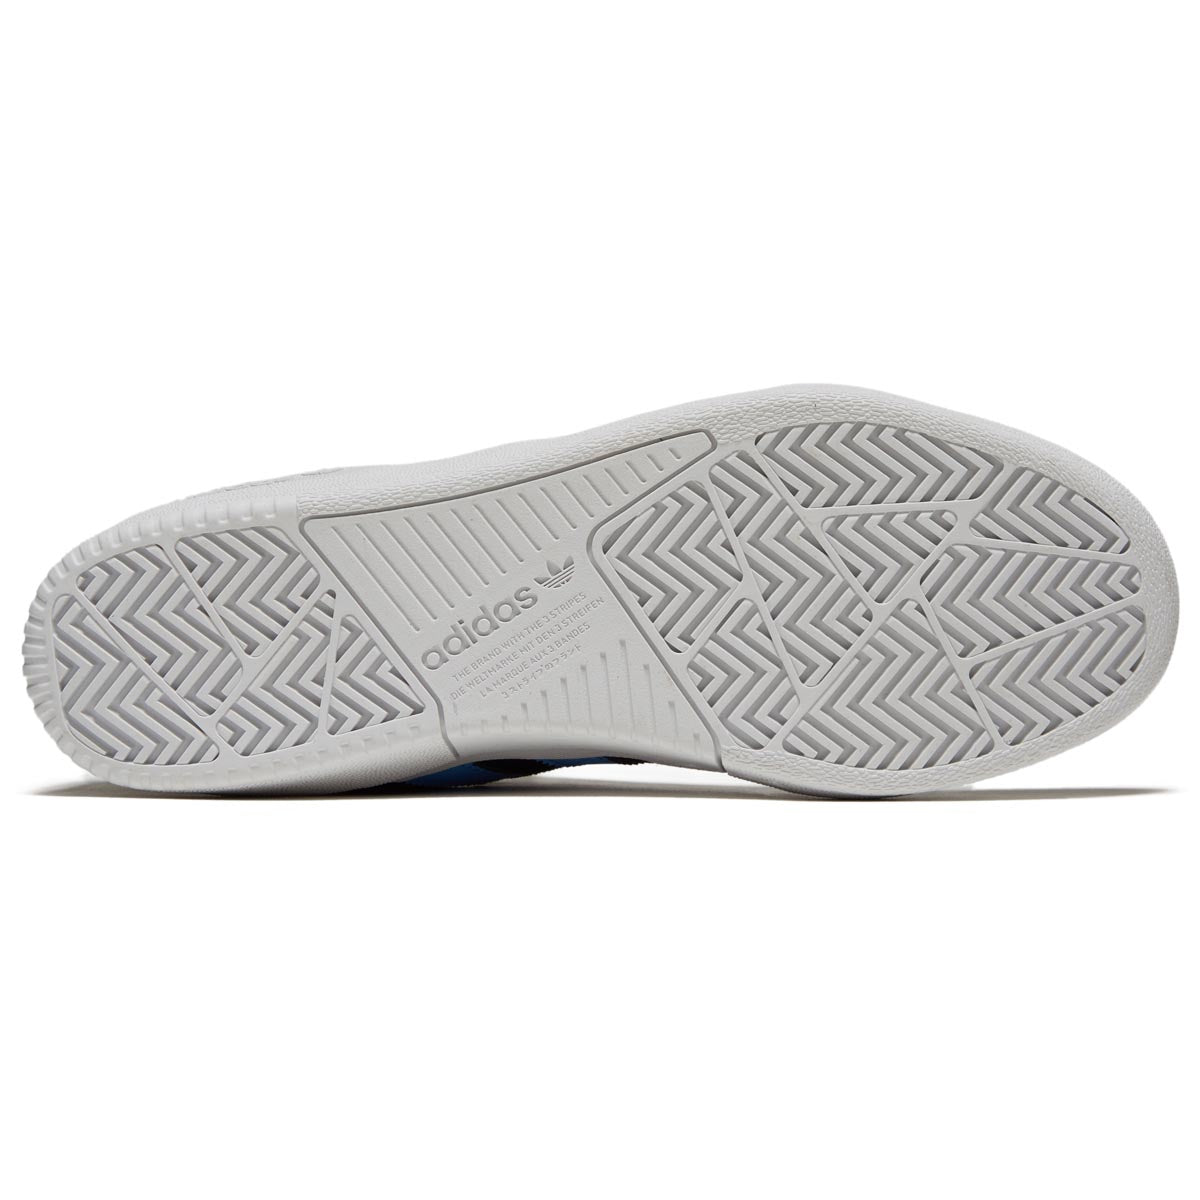 Adidas Tyshawn Shoes - Black/Light Grey Heather/Blue Burst image 4